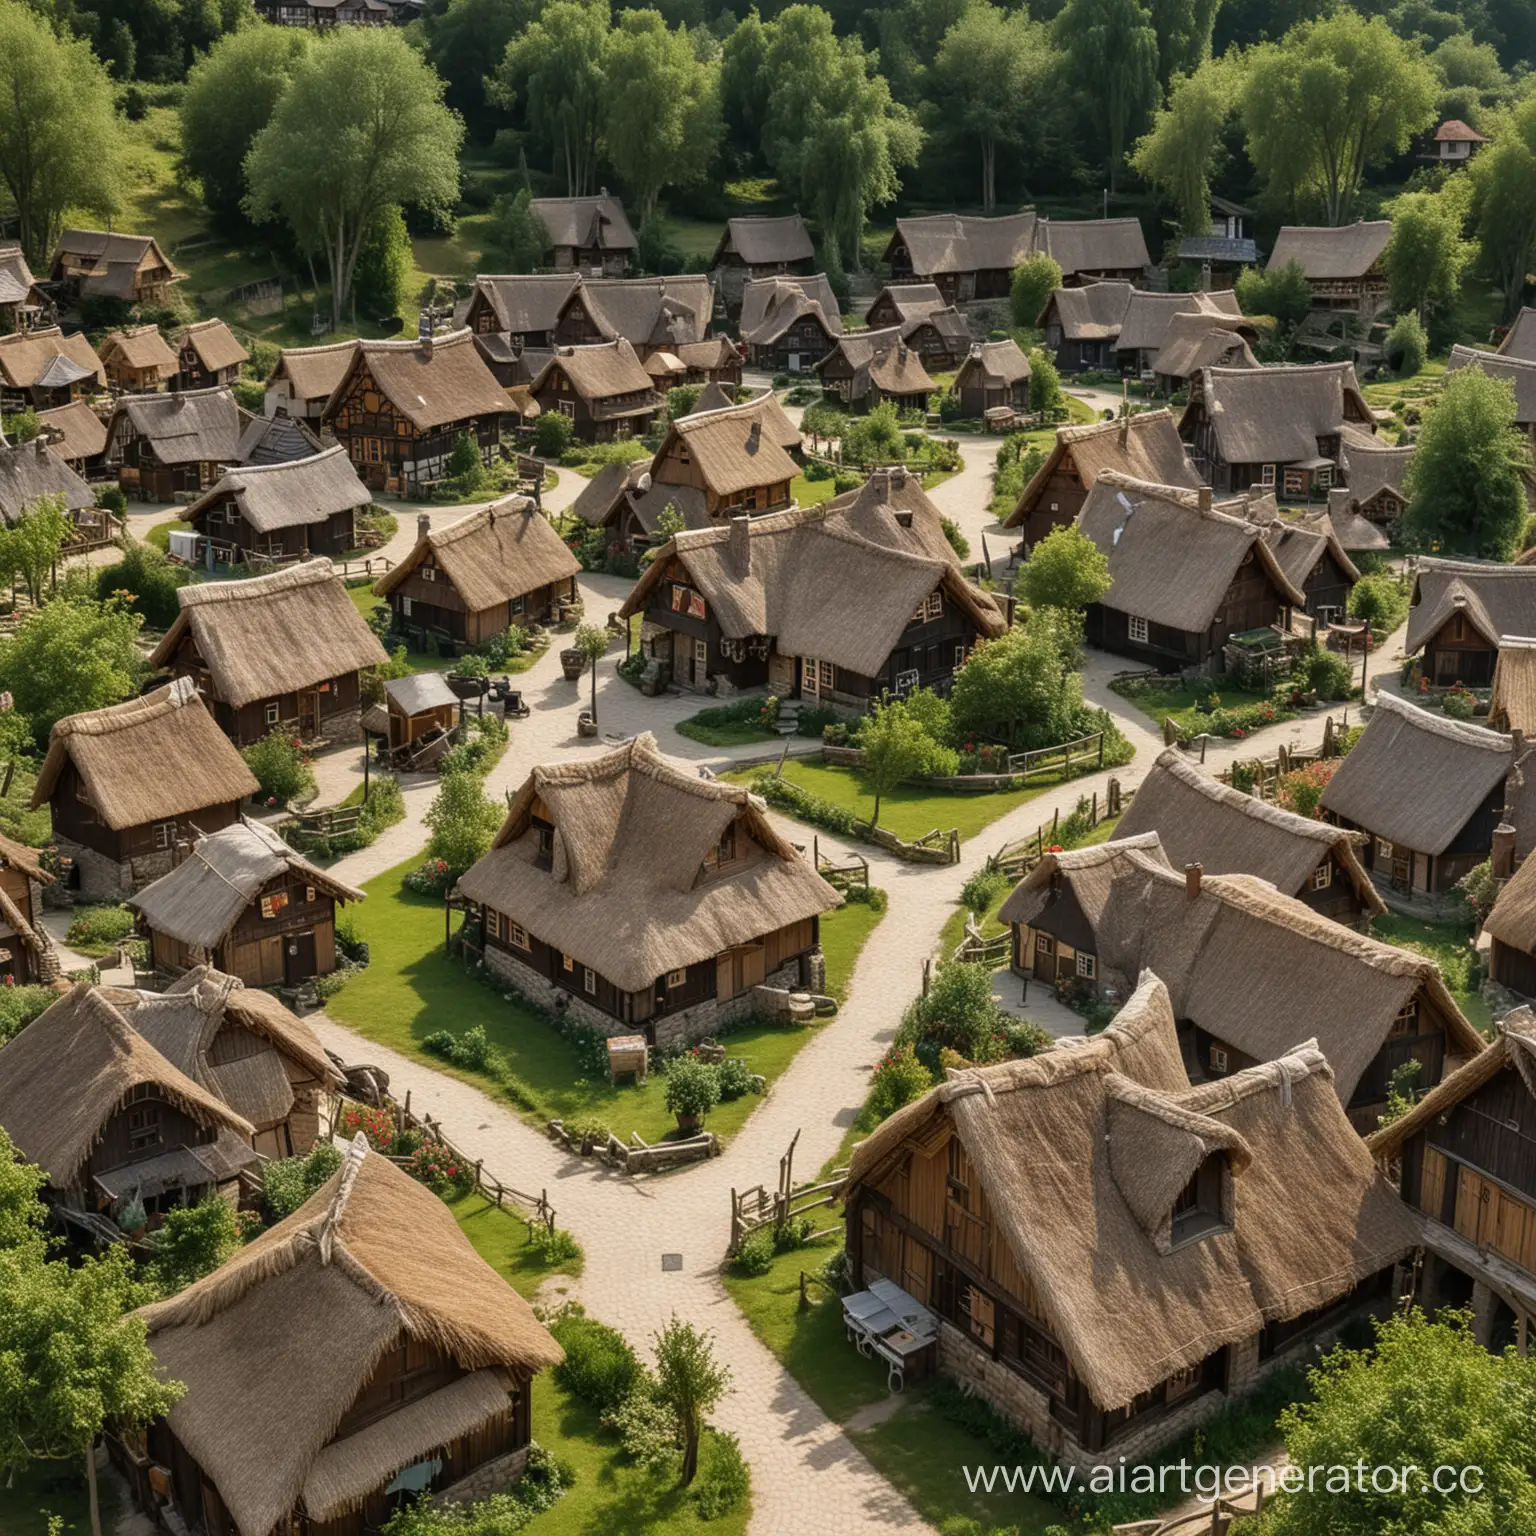 Фэнтези Деревня, деревянные домики, соломенные крыши, природа. Площадь в центре деревни, 